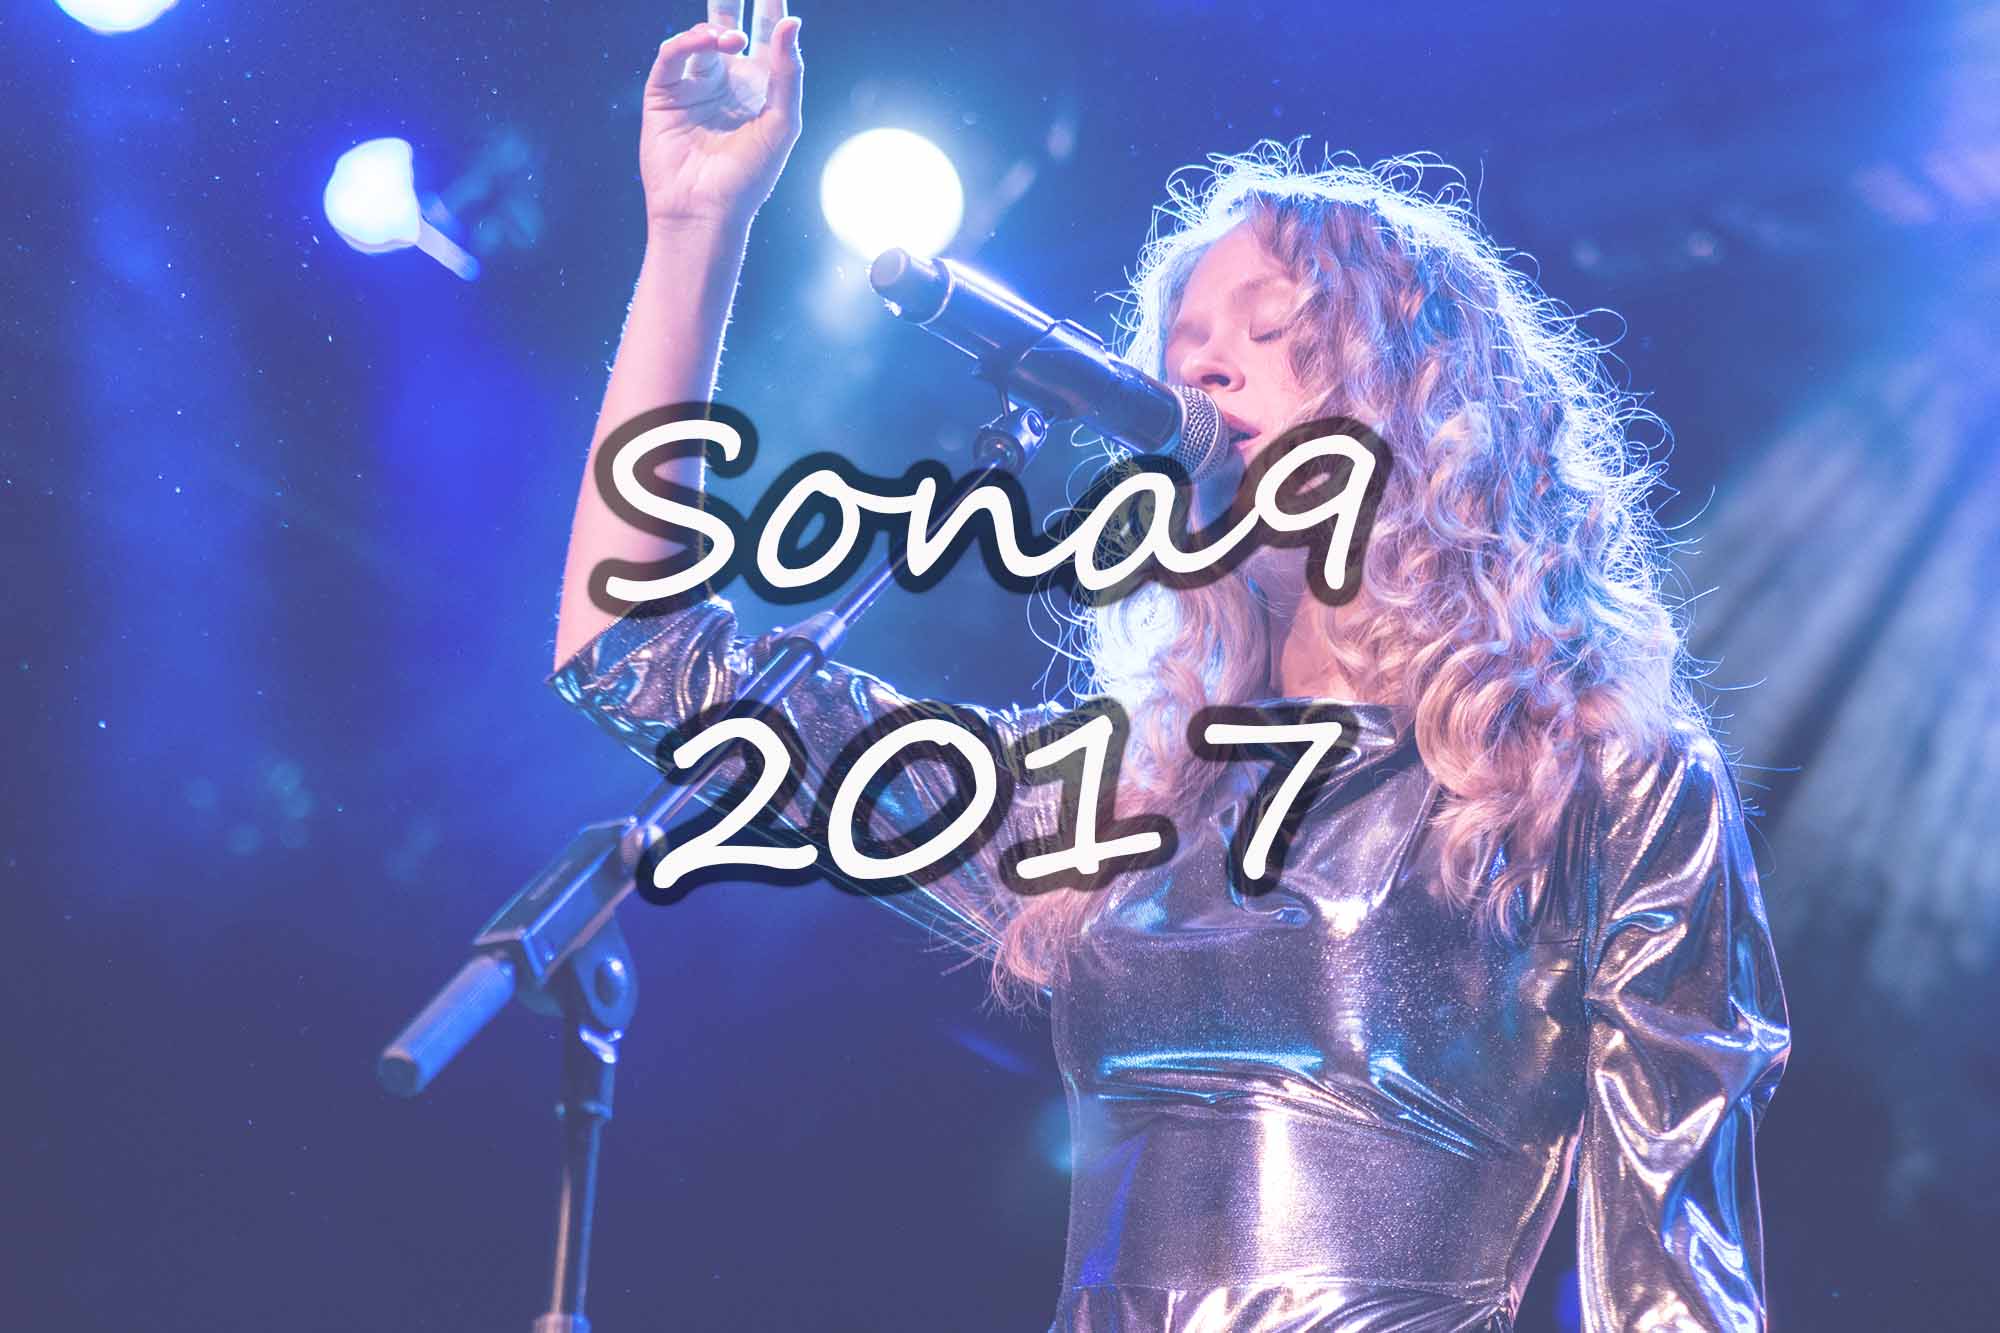 Final Sona9 2017